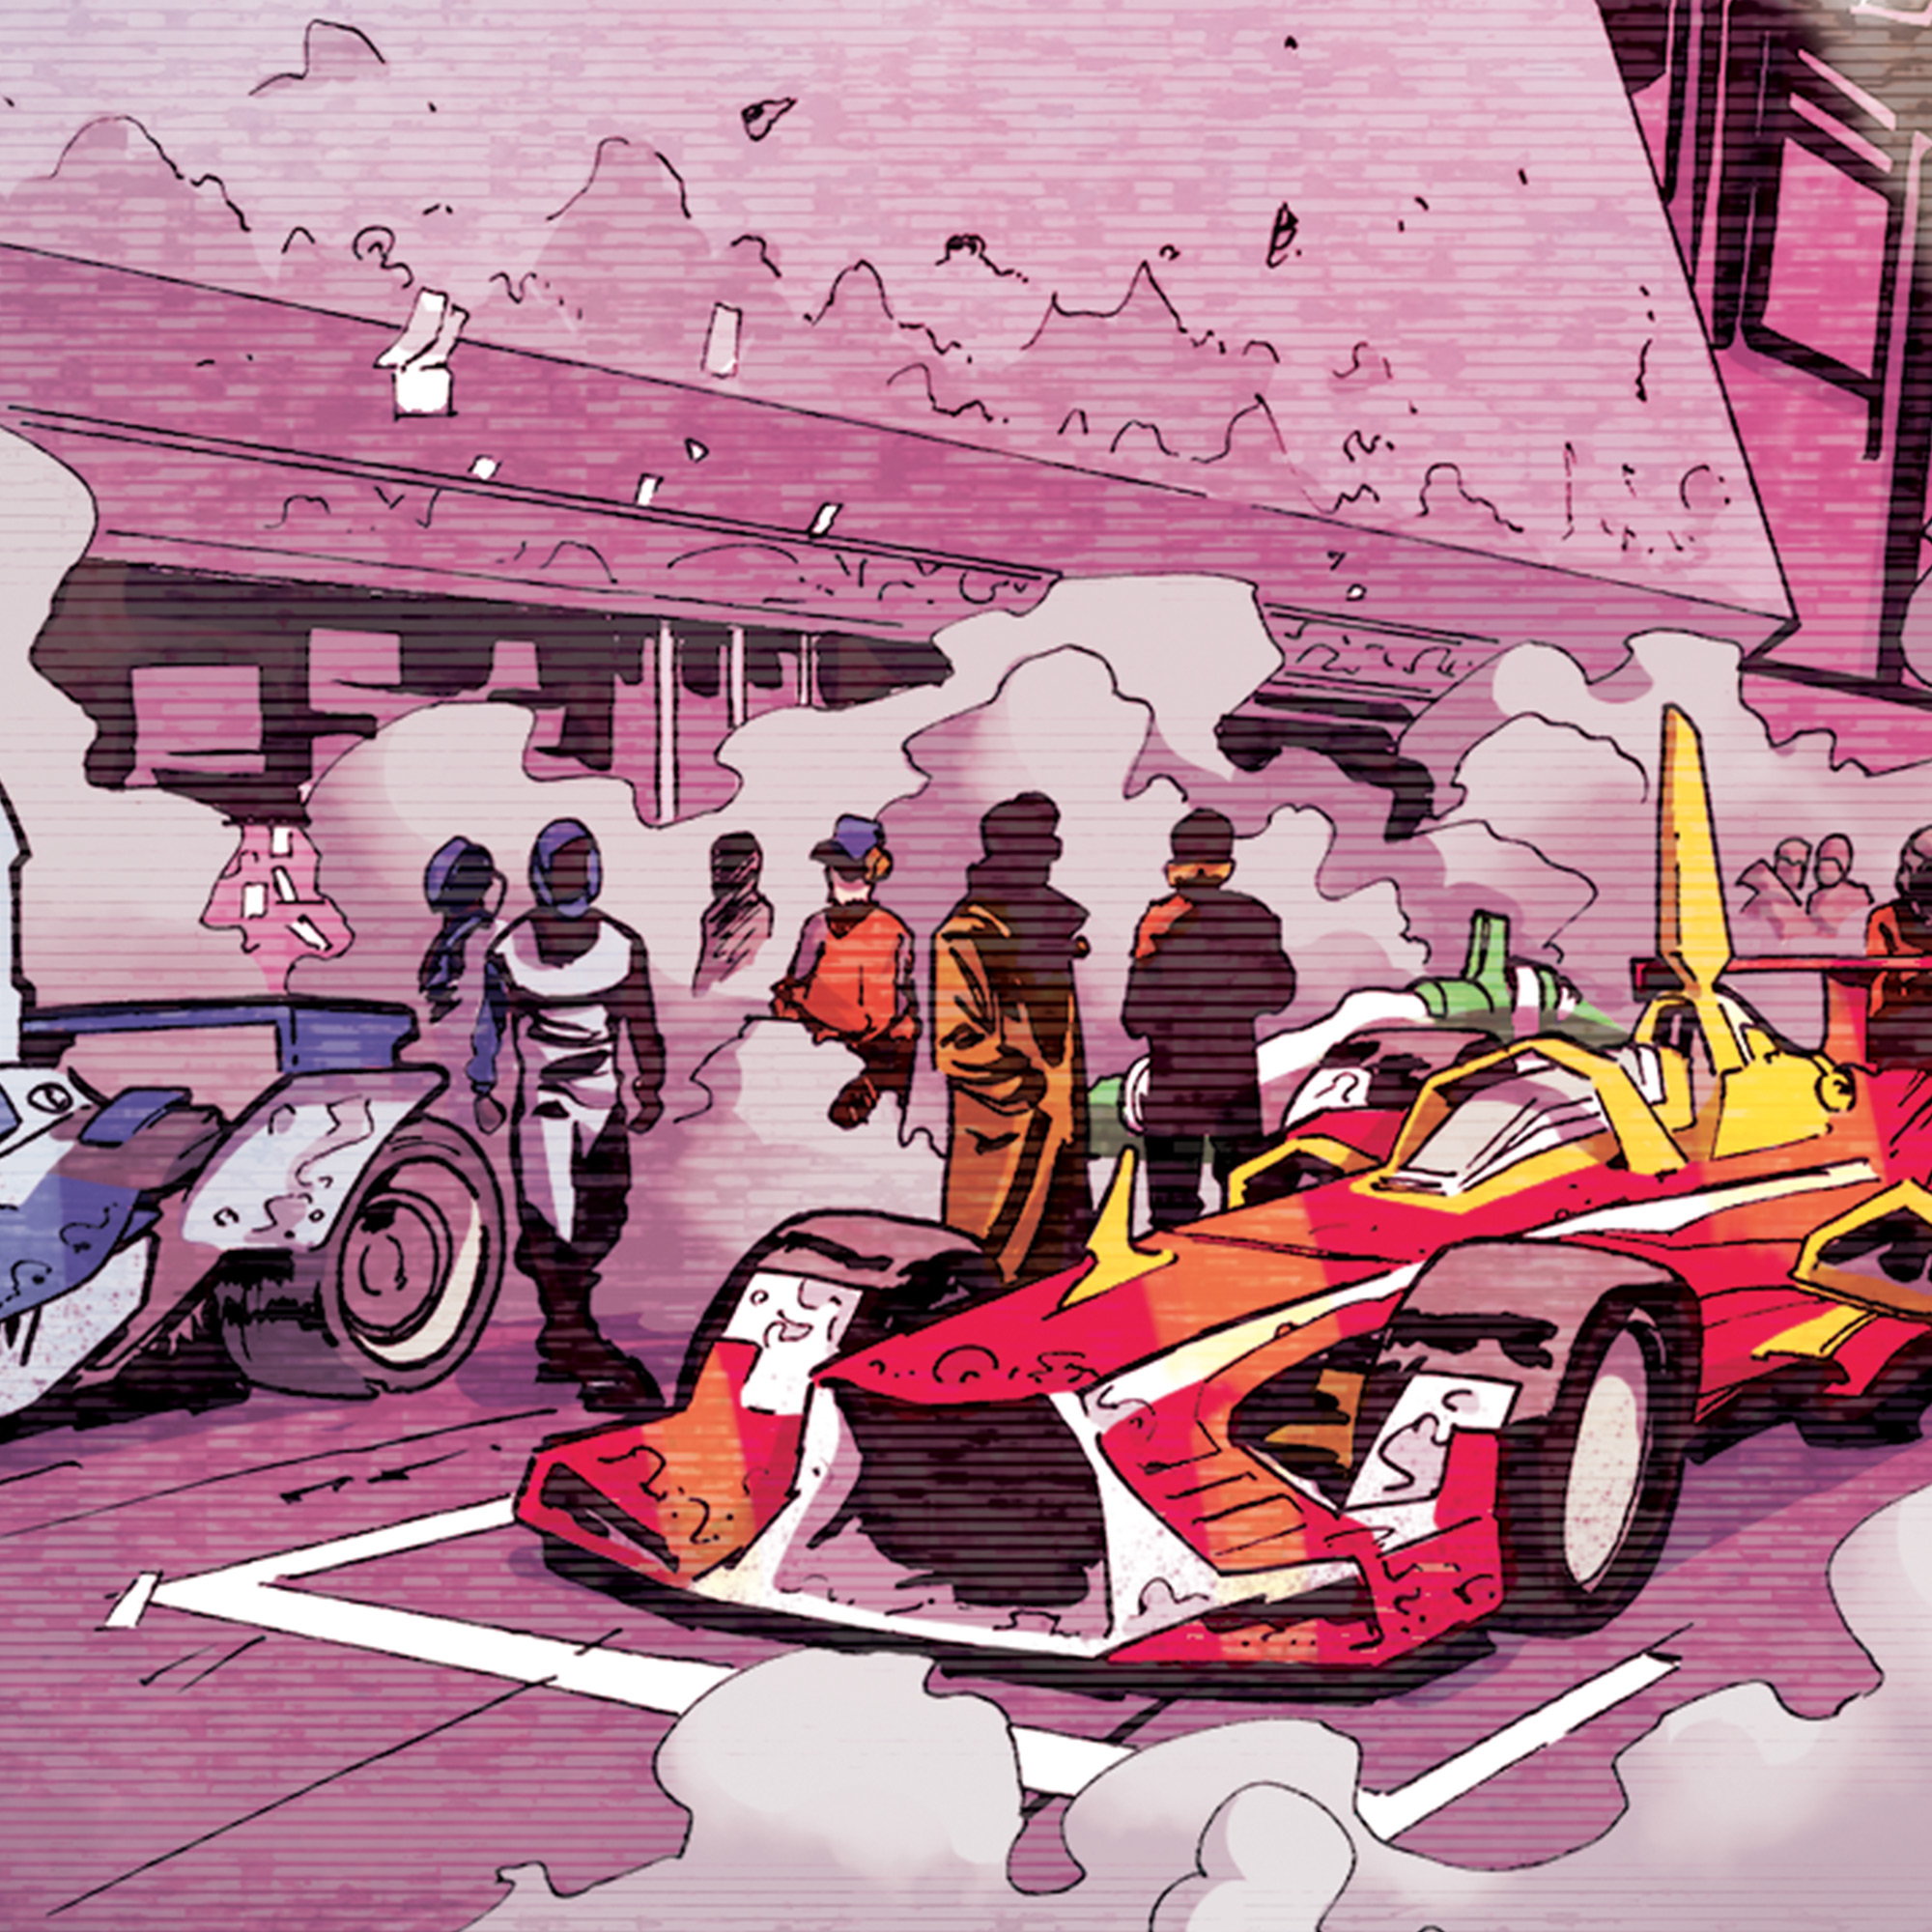 We race comic, il primo webcomic firmato Scuderia Ferrari | Collater.al 1